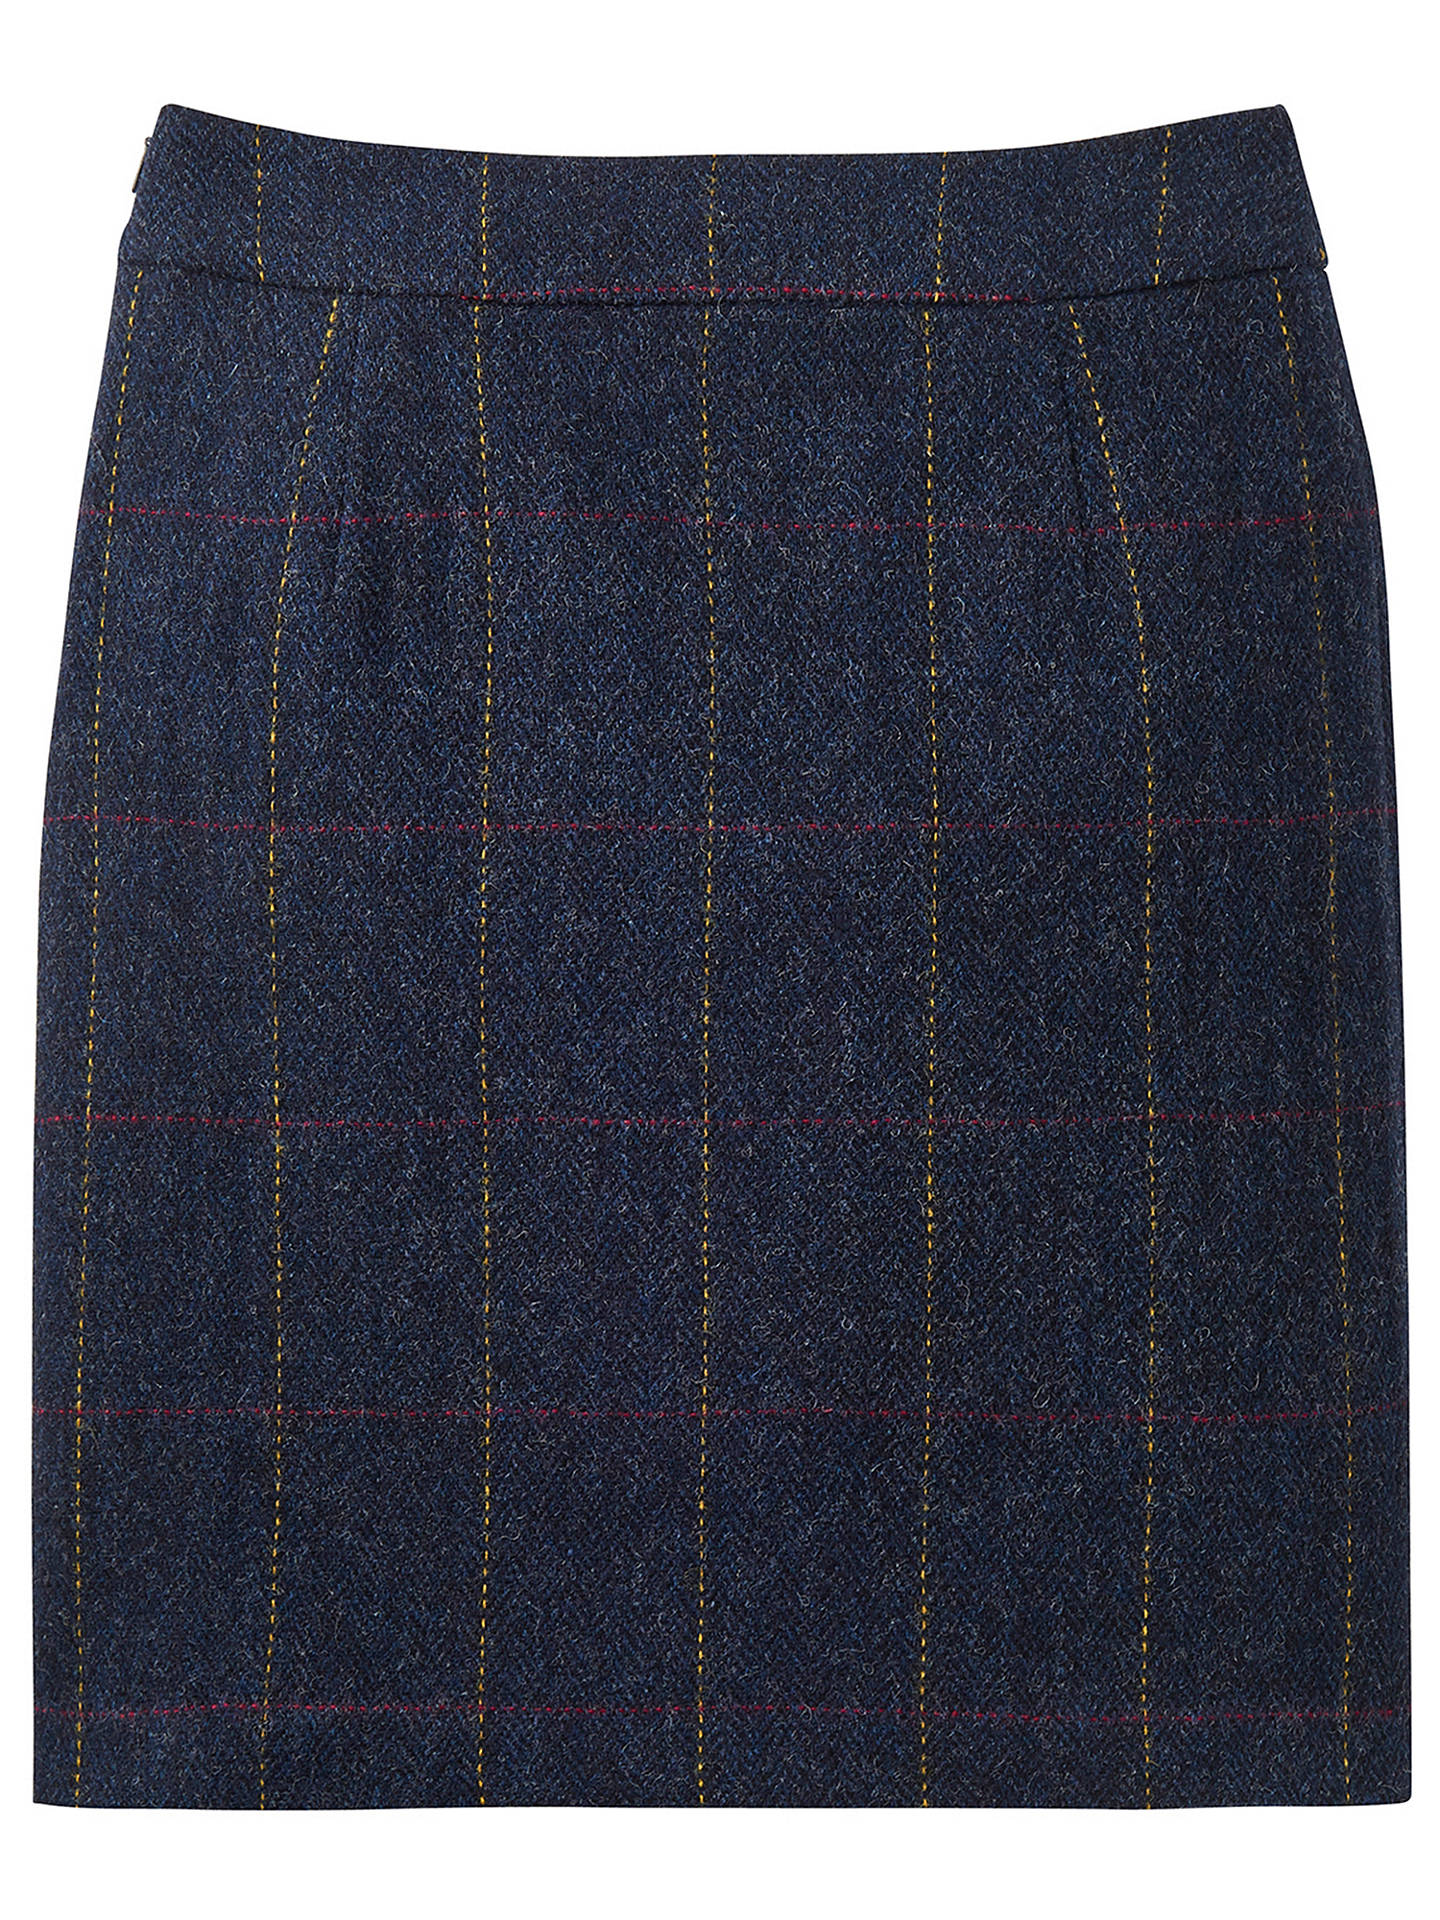 Joules Tweed Skirt | Navy at John Lewis & Partners